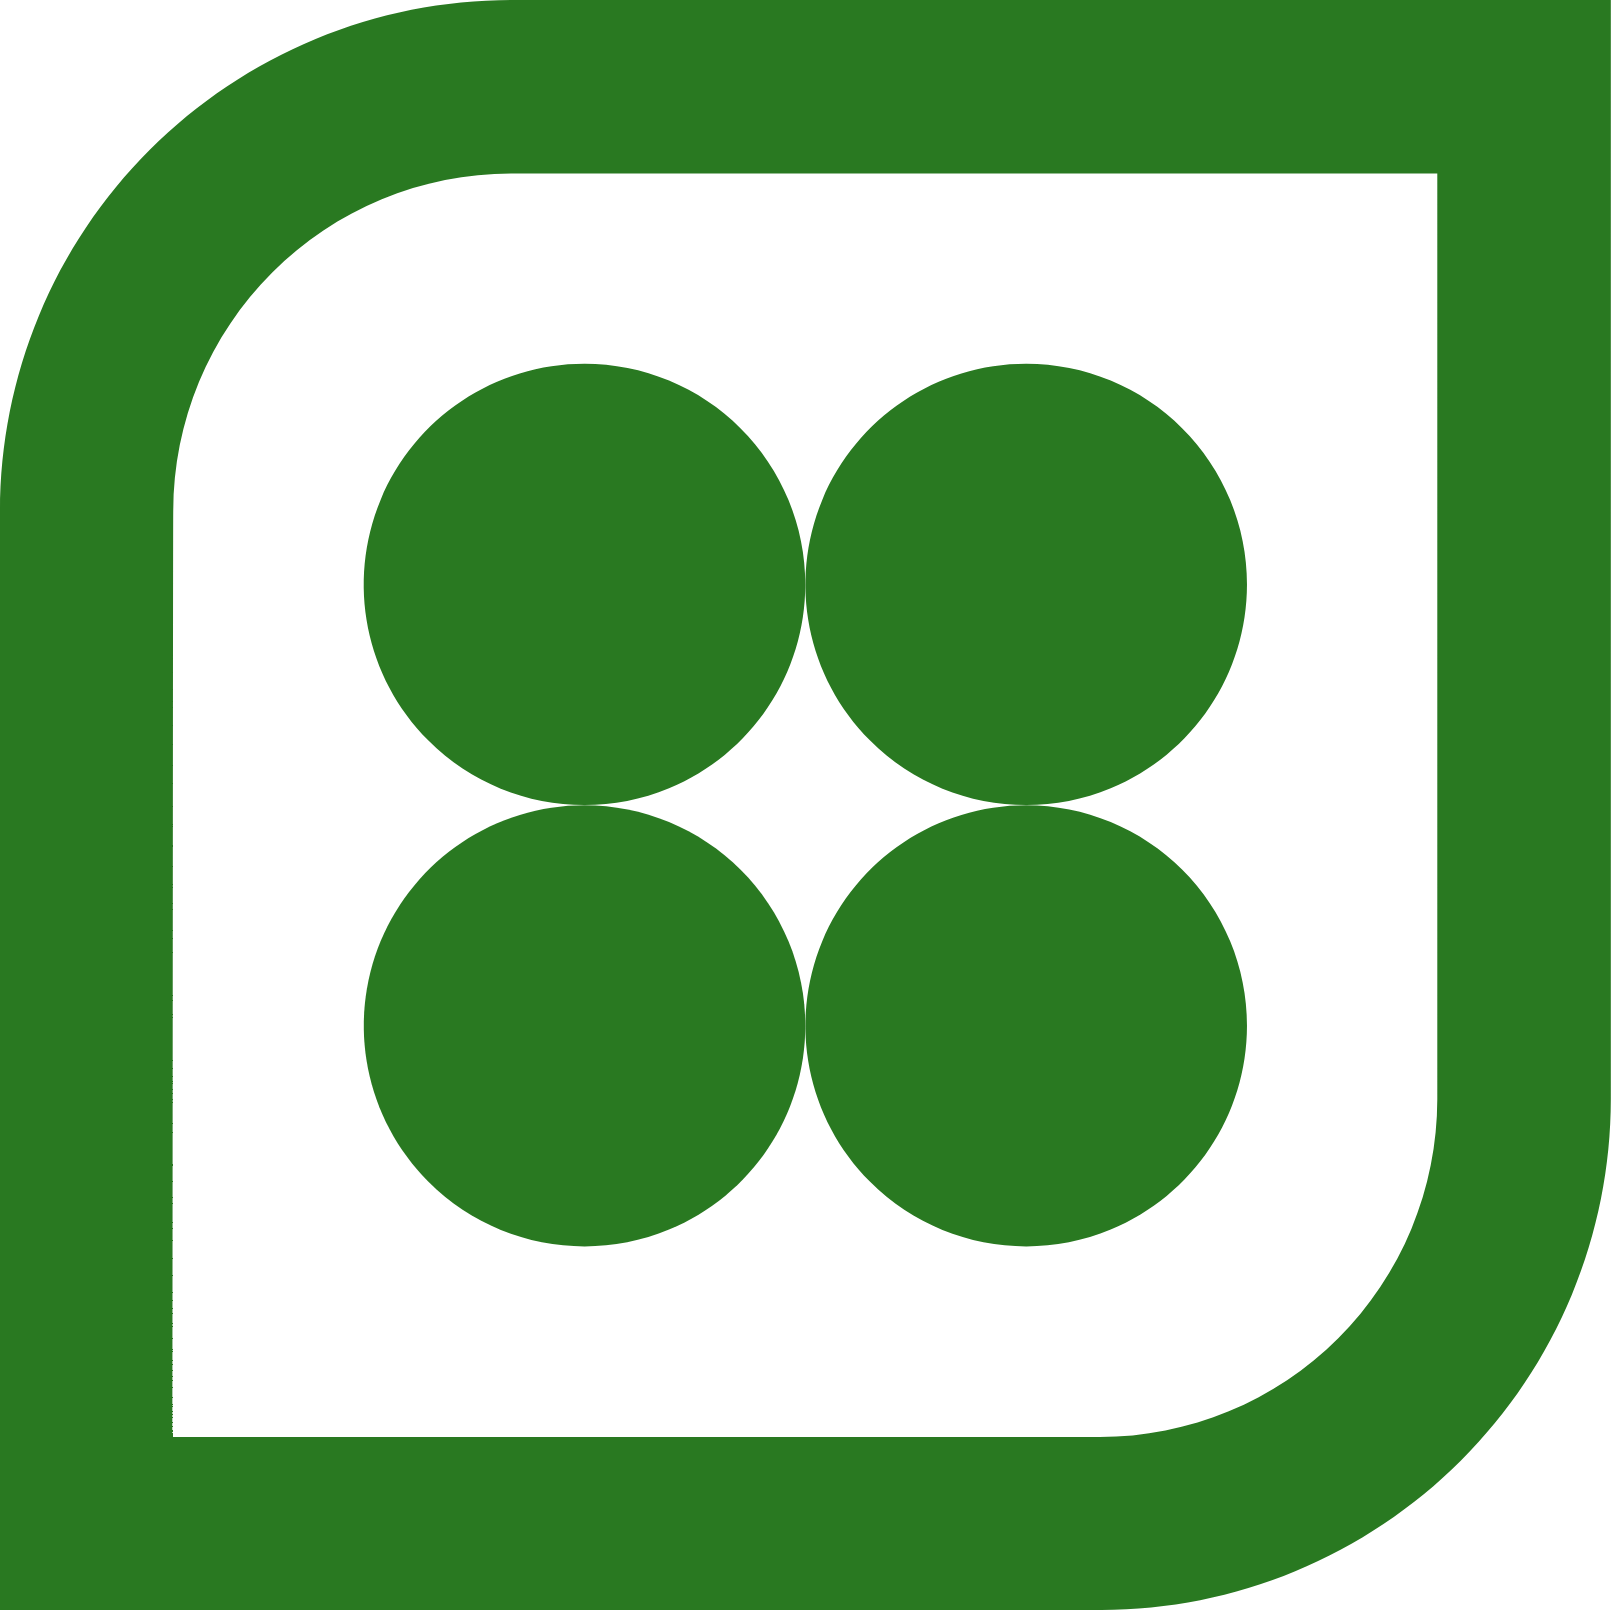 Capstone Green Energy Logo (transparentes PNG)